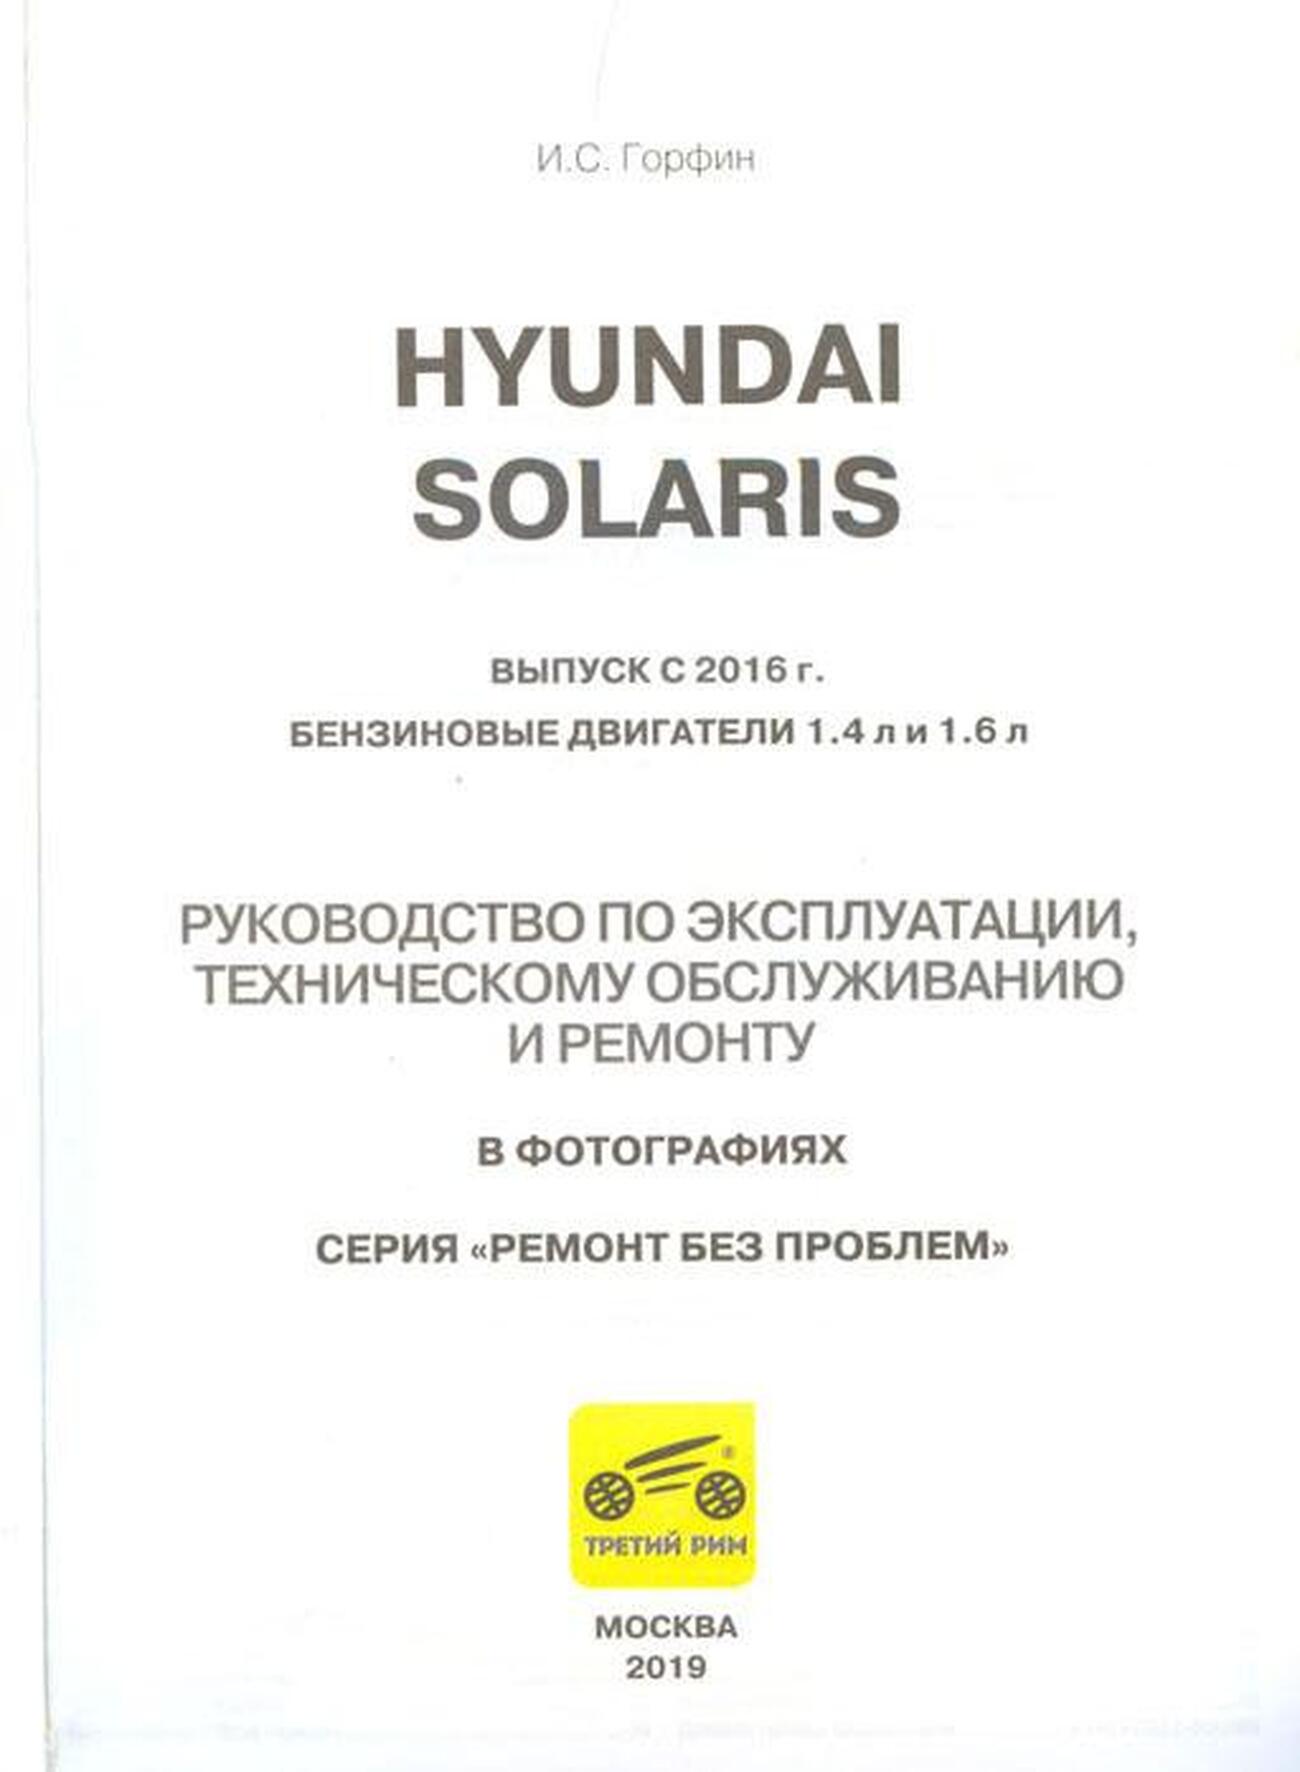 Книга: HYUNDAI SOLARIS (б) с 2016 г.в. рем., экспл., то, ЦВЕТ. фото., сер. РБП | Третий Рим